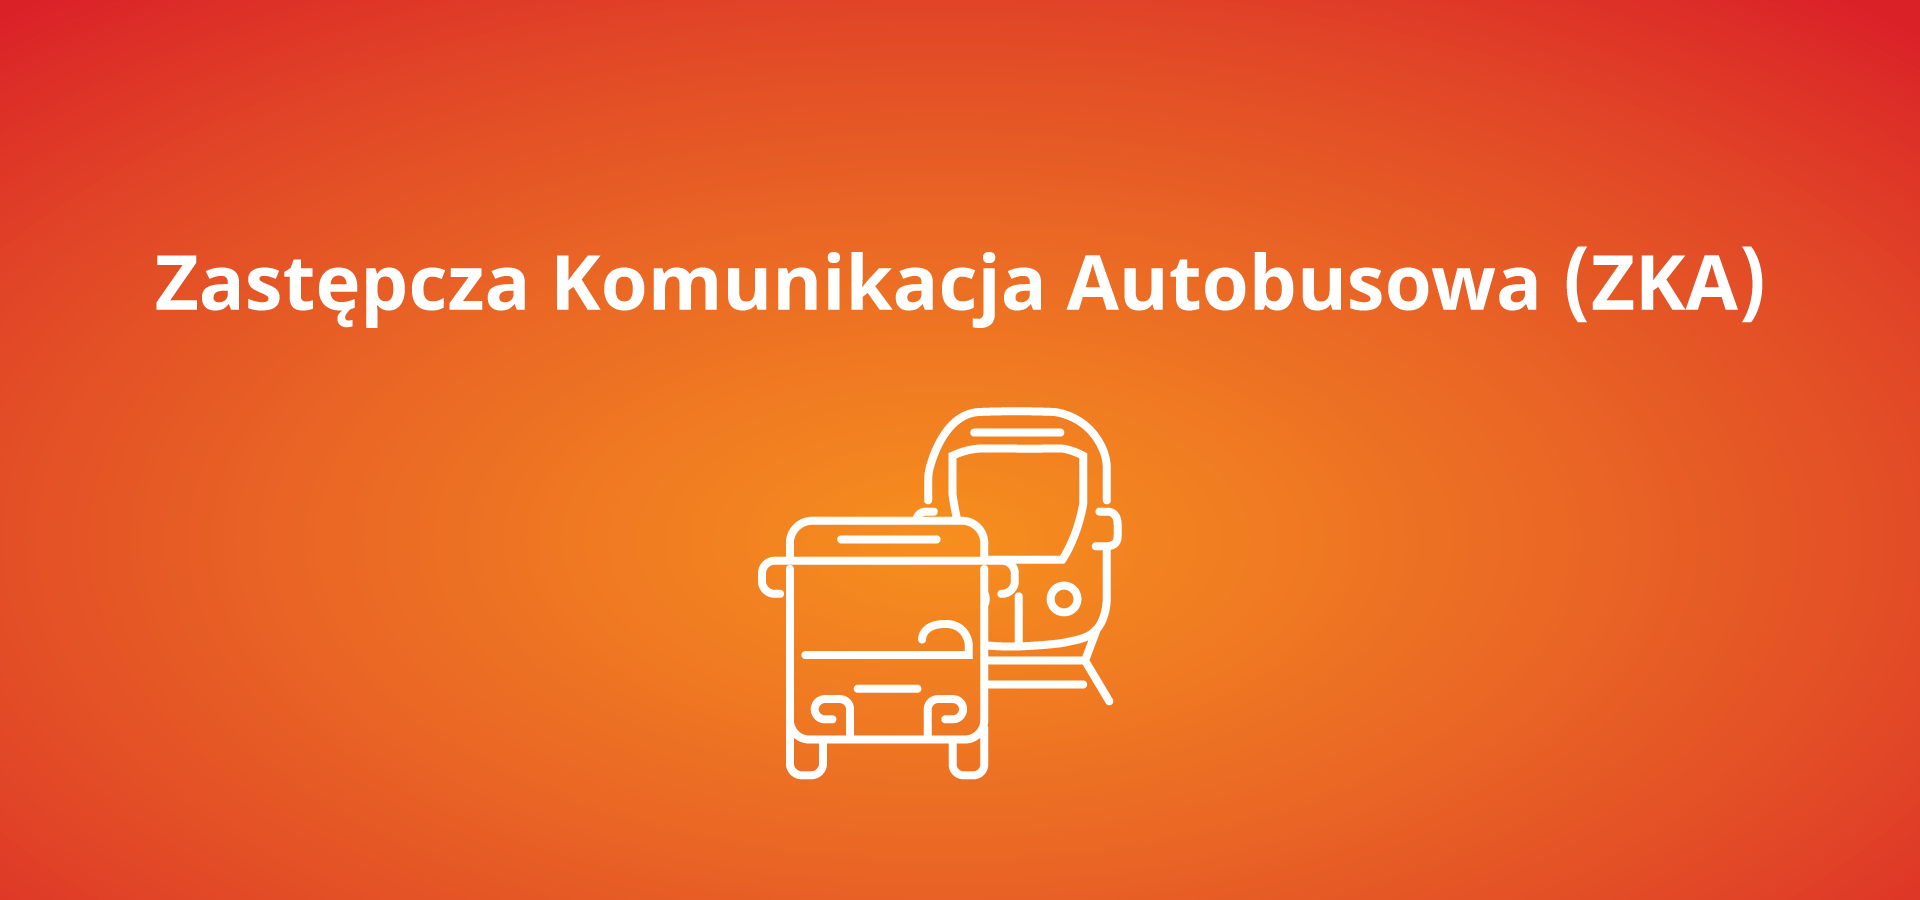 Zmiana miejsca zatrzymania zastępczej komunikacji autobusowej (ZKA) w miejscowości  Bystra Podhalańska od 6 grudnia 2021 r.